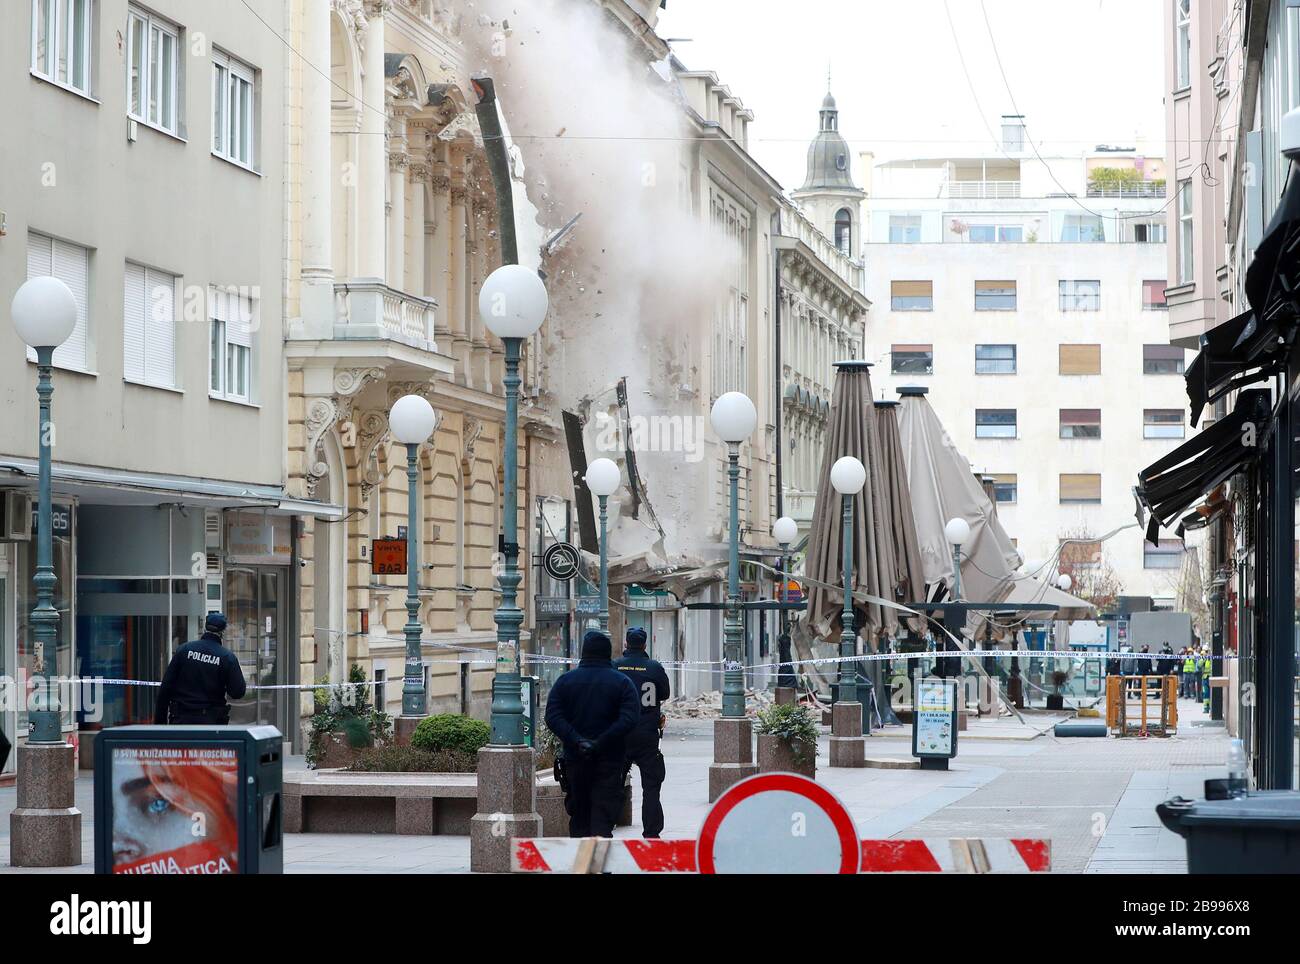 (200324) -- ZAGREB, le 24 mars 2020 (Xinhua) -- les gens démolissent la façade d'un bâtiment par mesure de précaution après un tremblement de terre à Zagreb, Croatie, le 23 mars 2020. Une série de répliques ont continué à hochet la capitale croate Zagreb lundi après un séisme de magnitude 5,4 qui a gravement endommagé la ville un jour plus tôt. Le ministre croate de l'intérieur, Davor Bozinovic, a confirmé lundi qu'il y avait plus de 250 bâtiments endommagés, dont de nombreuses reliques culturelles. Plus de 7 000 propriétés signalées pour l'évaluation des dommages. (Sanjin Strukic/Pixsell via Xinhua) Banque D'Images